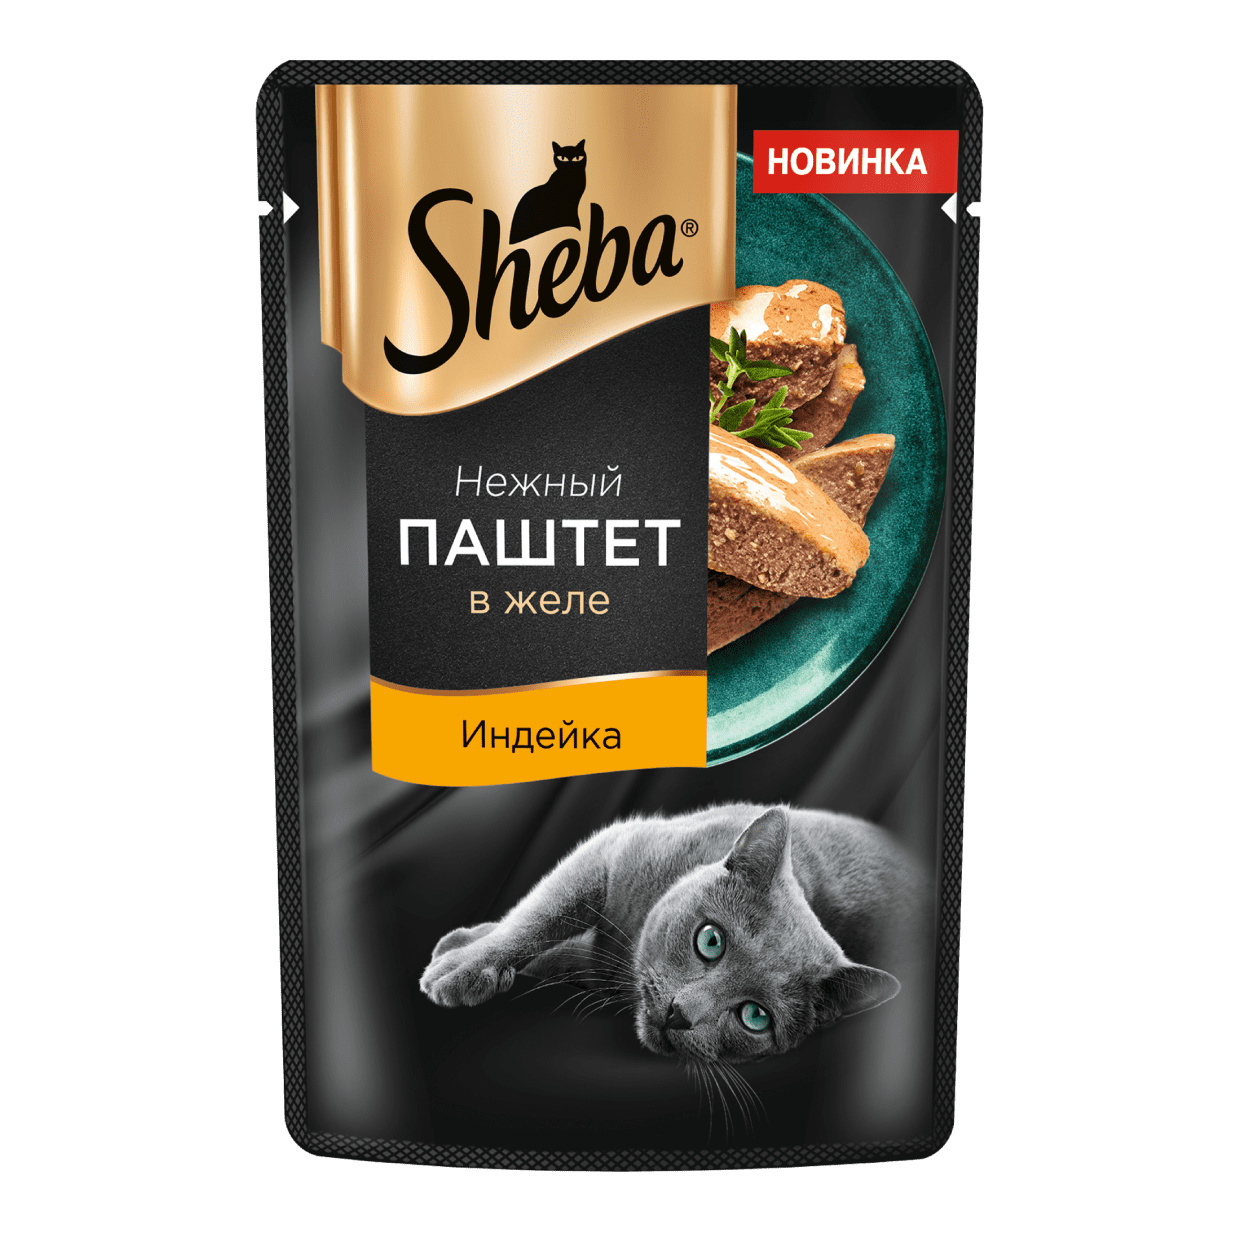 Sheba Sheba влажный корм для кошек Нежный паштет в желе, с индейкой (75 г)